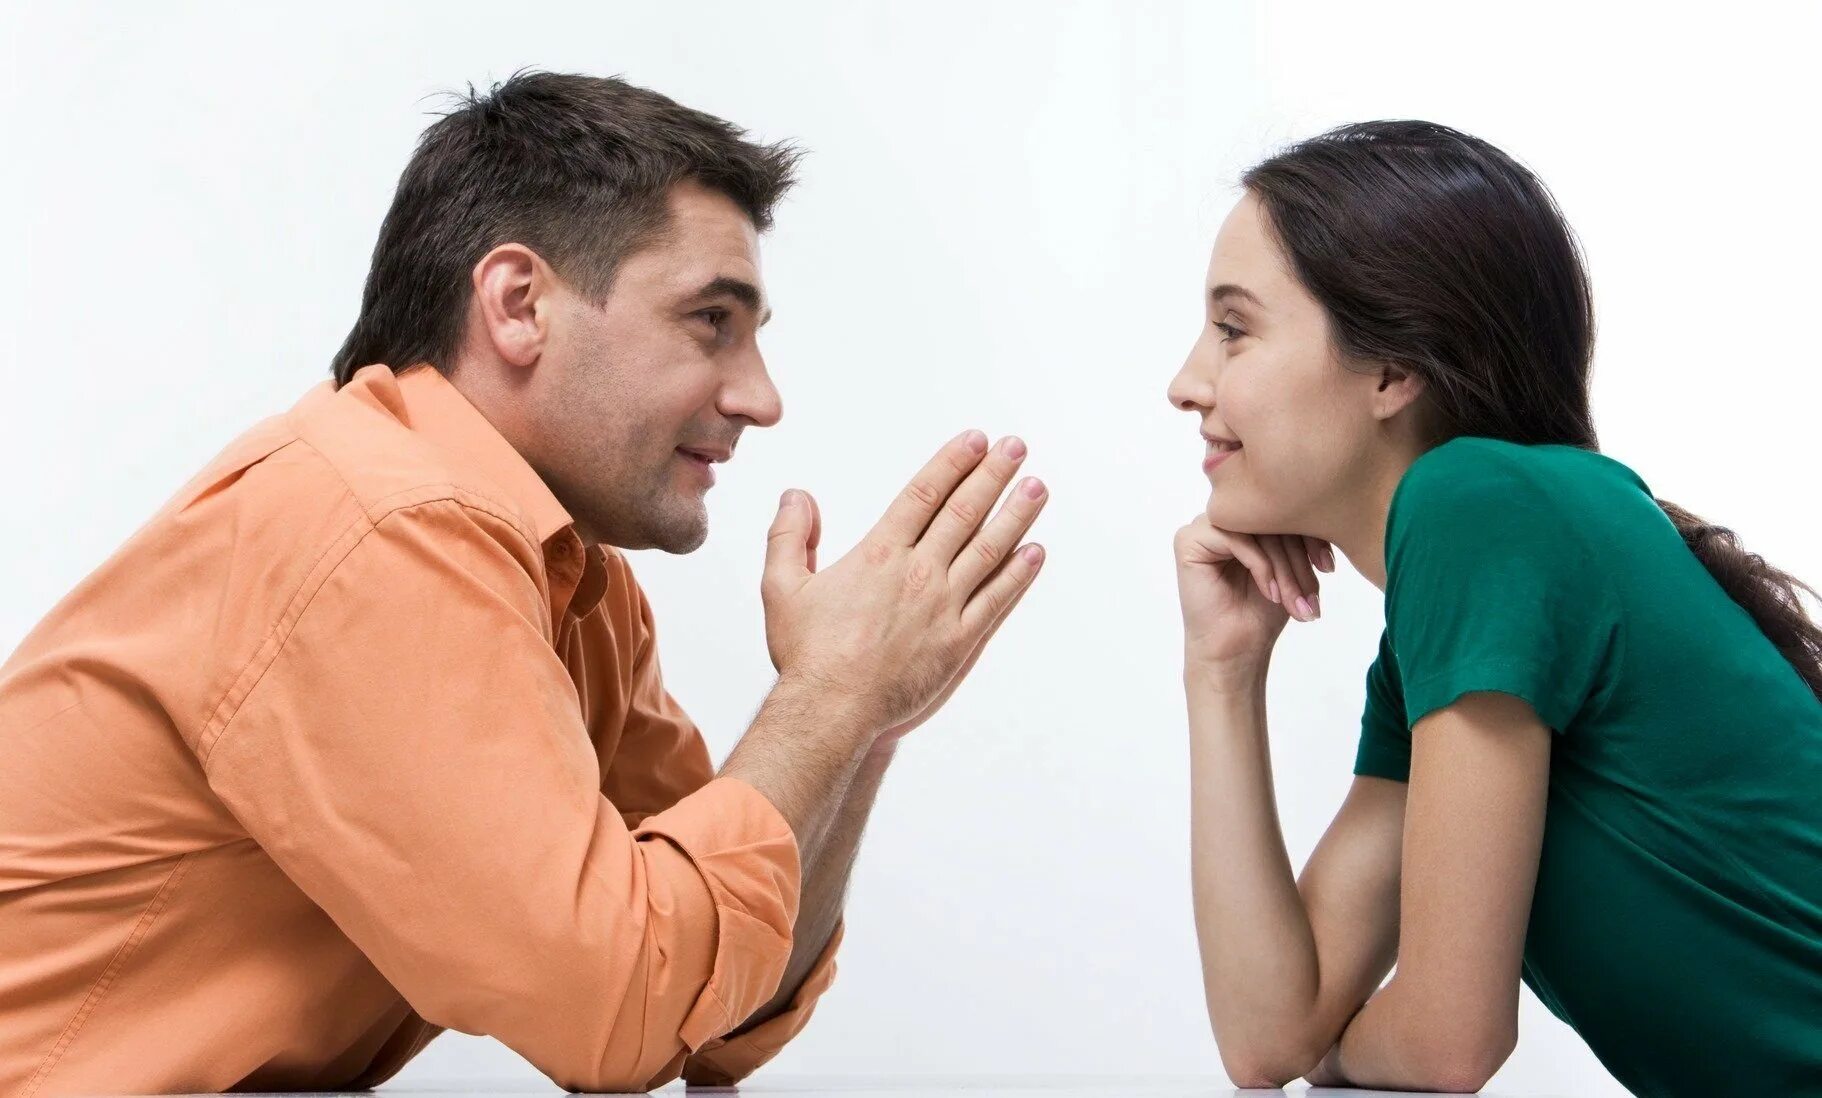 Почему важно поддерживать человека. Разговор между мужчиной и женщиной. Общение людей. Взаимопонимание в общении. Беседа мужчины и женщины.